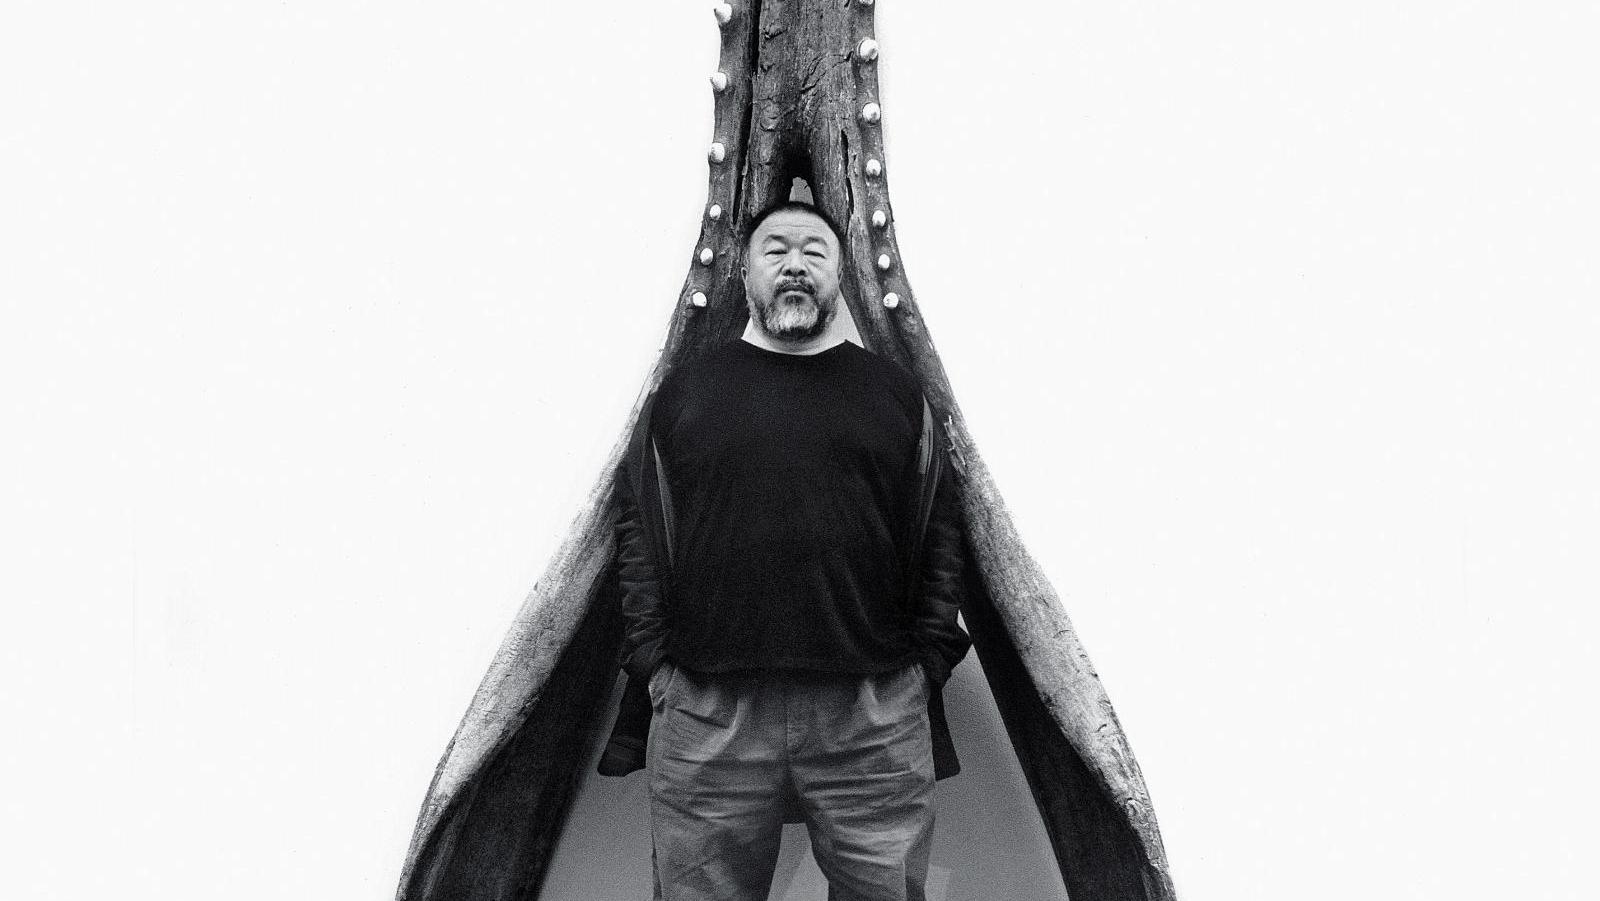 Ai Weiwei devant le grand cachalot (mâchoire inférieure) du musée cantonal de zoologie... Ai Weiwei